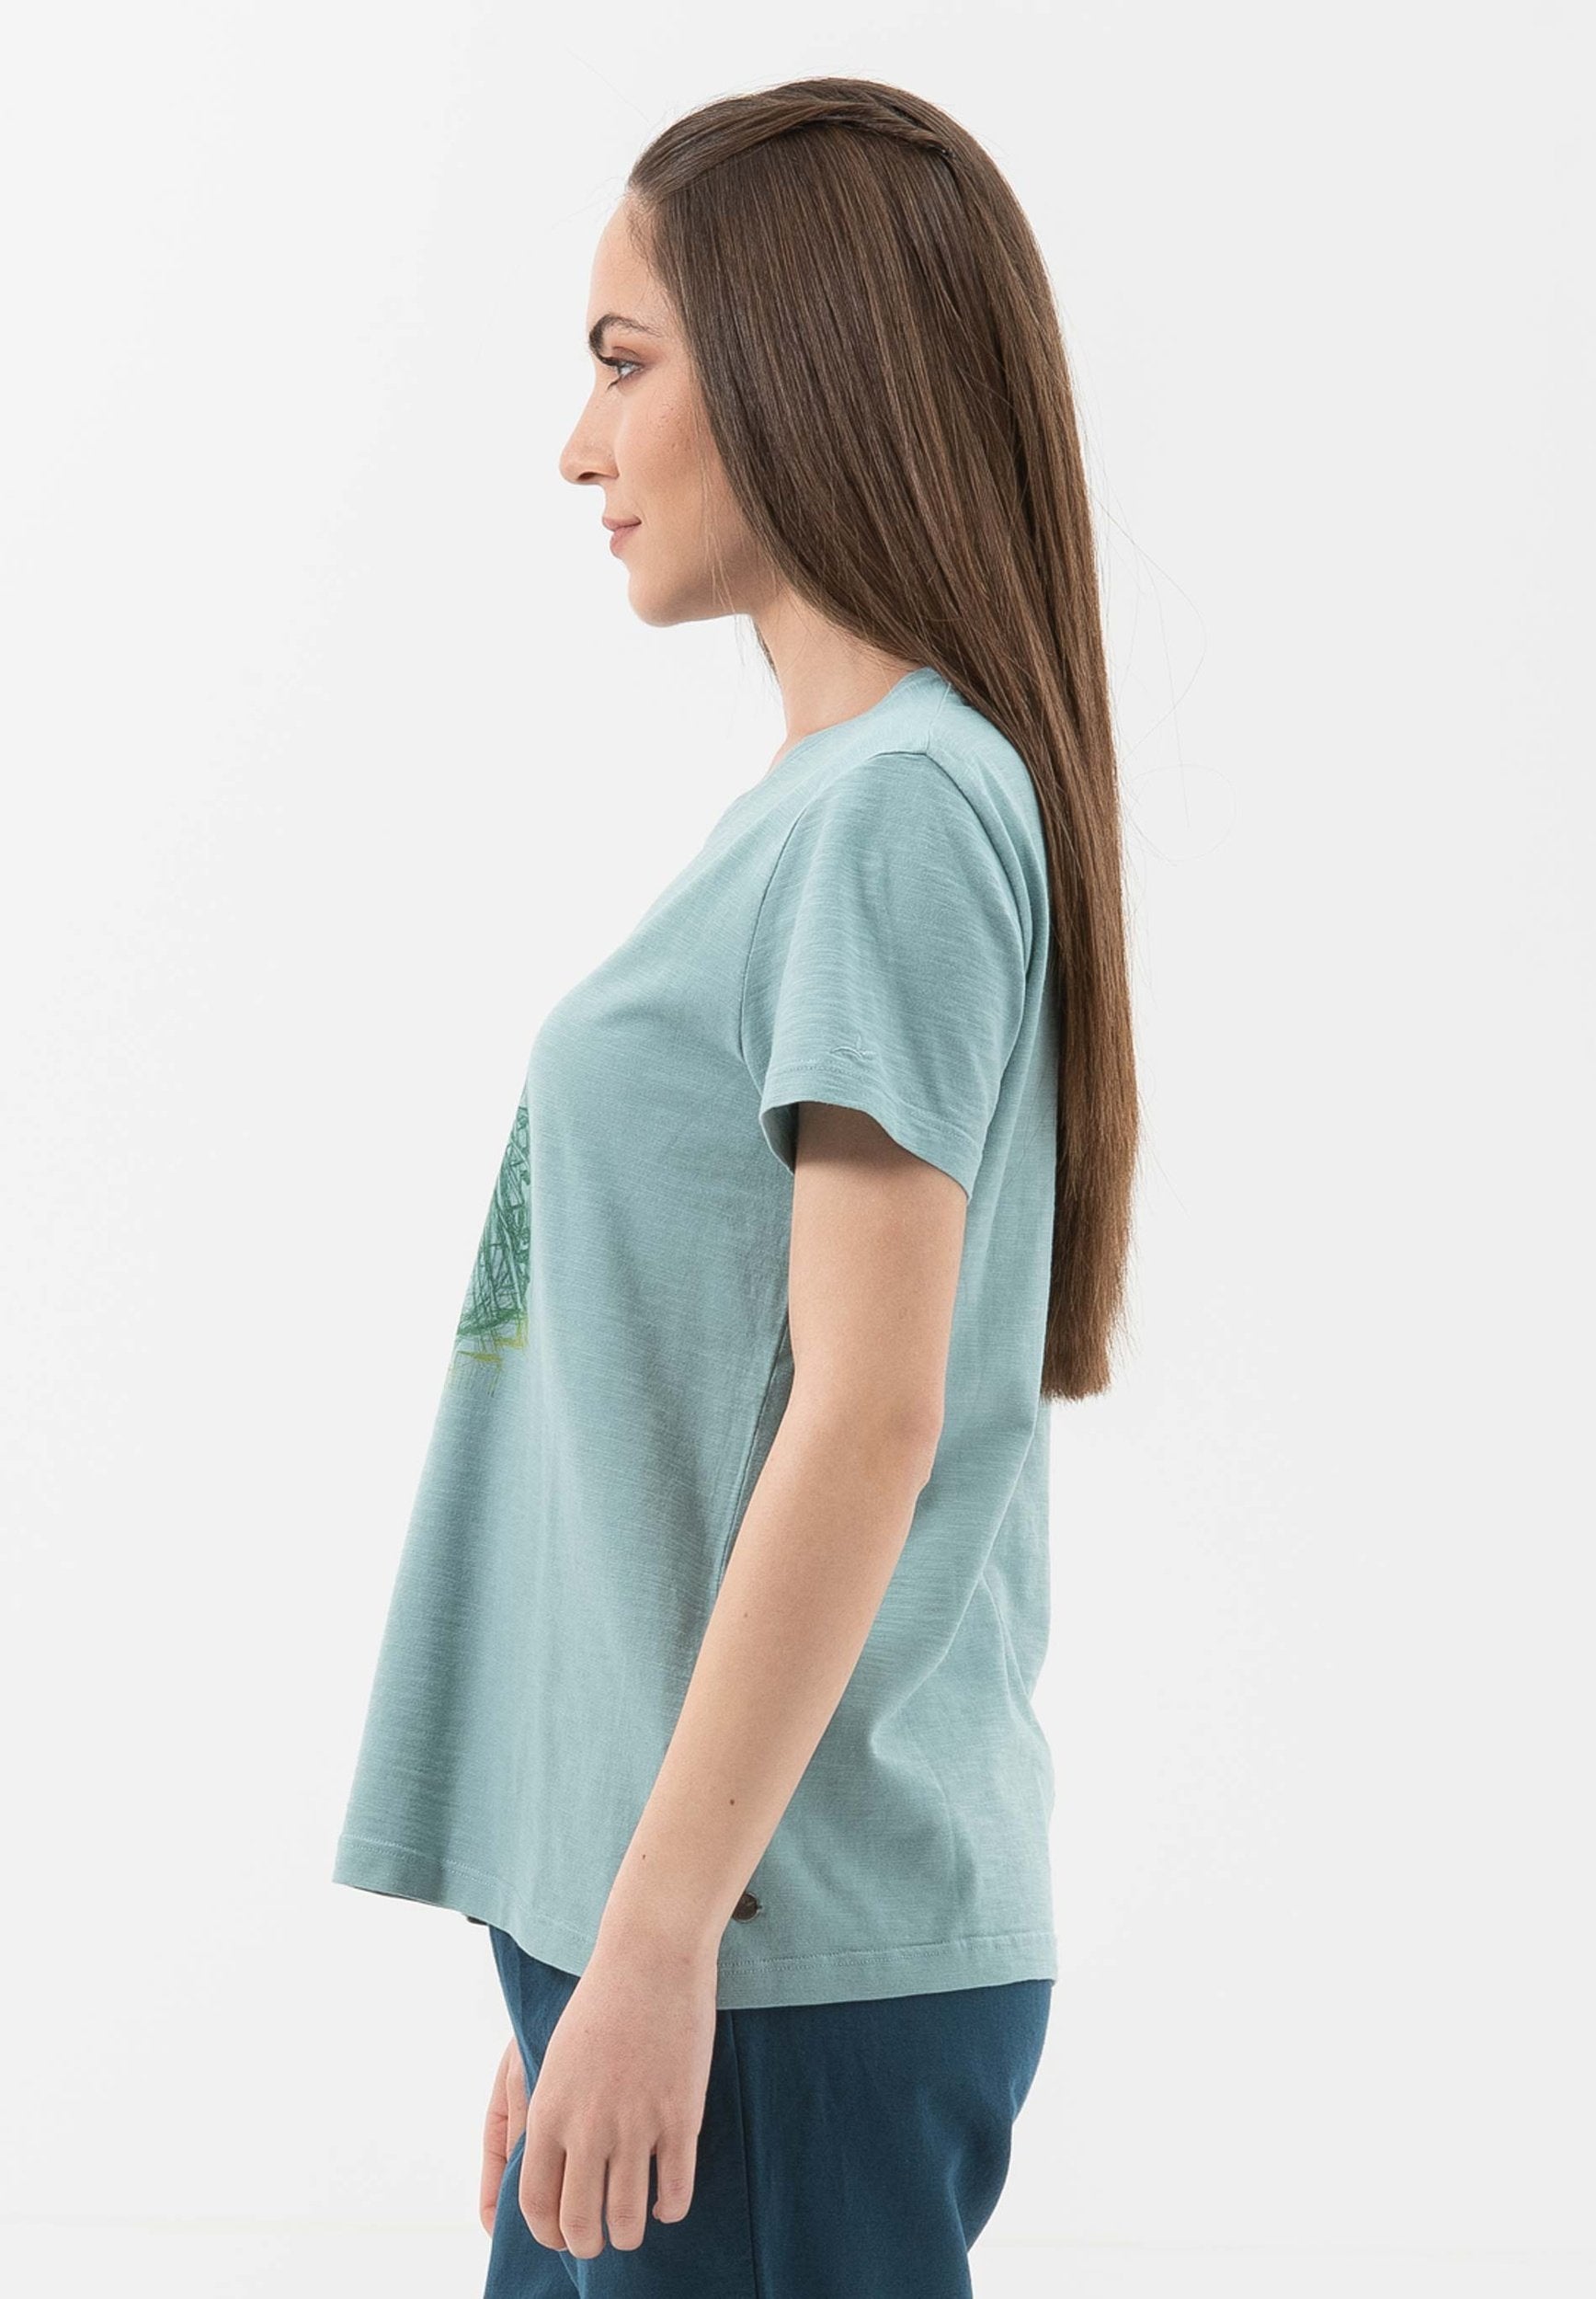 T-Shirt aus Bio-Baumwolle mit  Riesenrad-Print